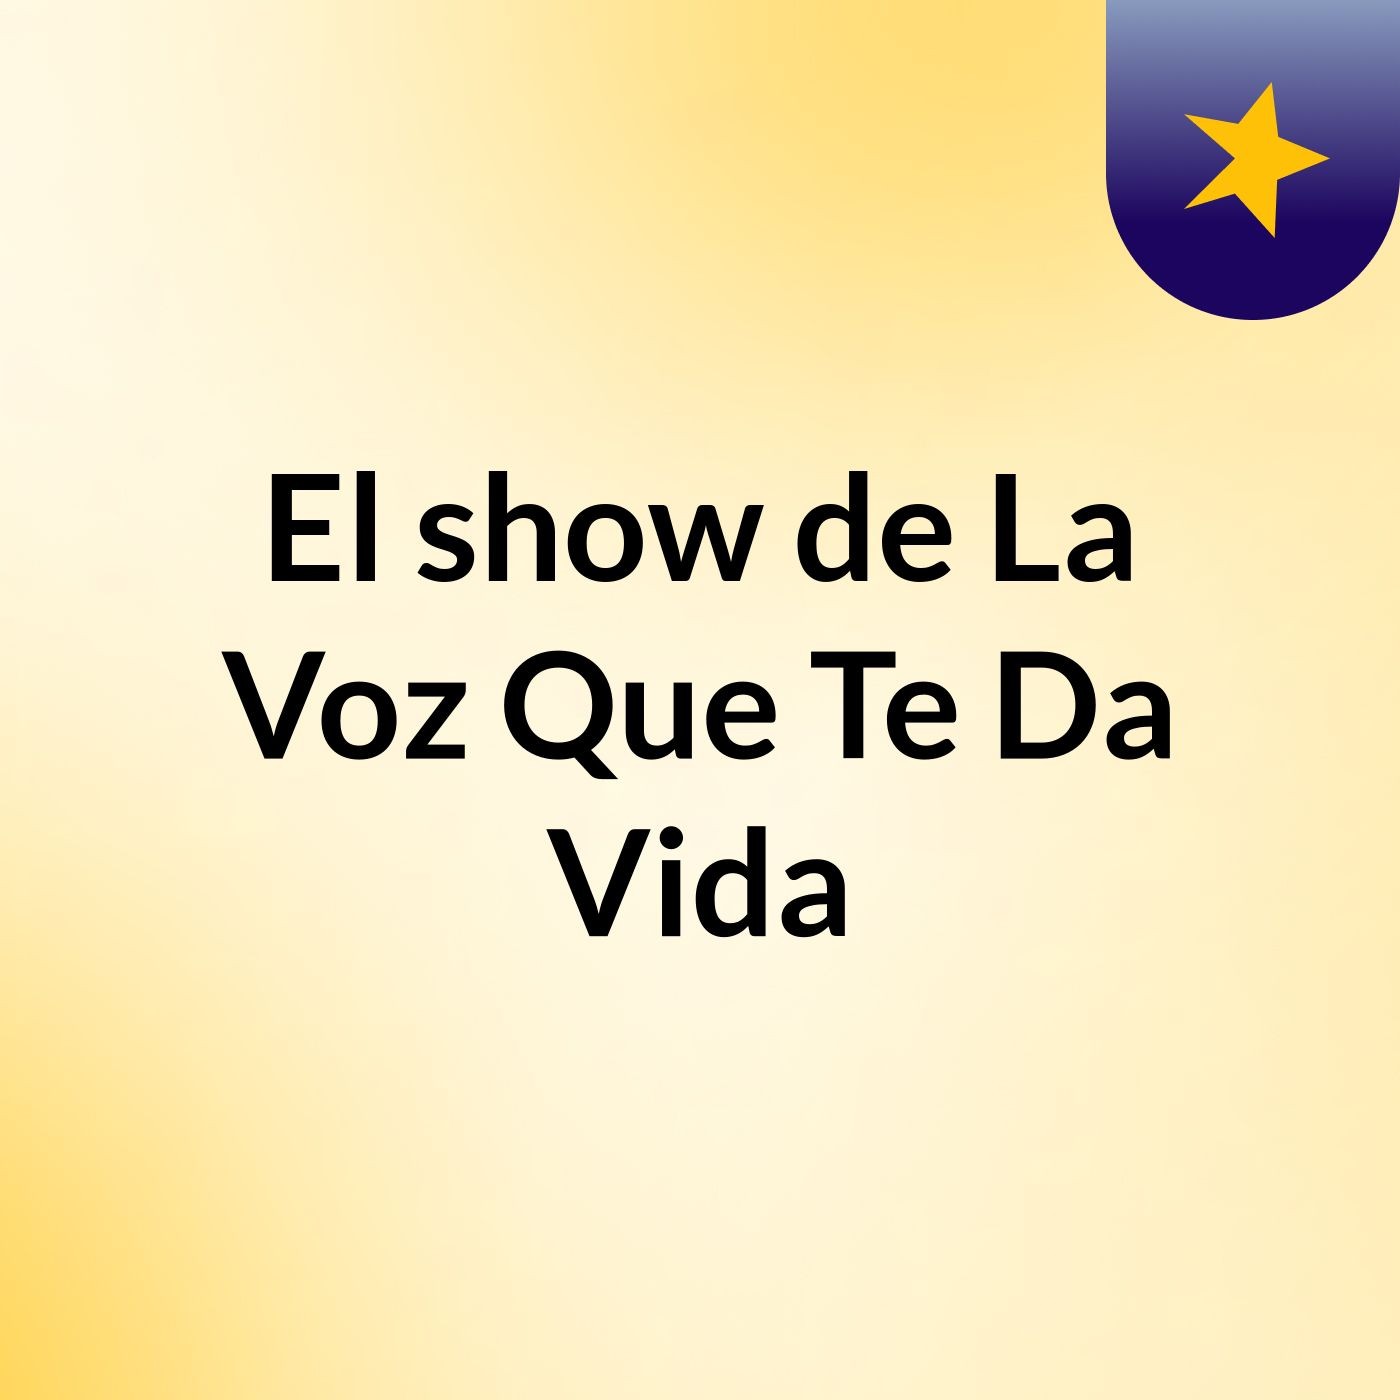 El show de La Voz Que Te Da Vida